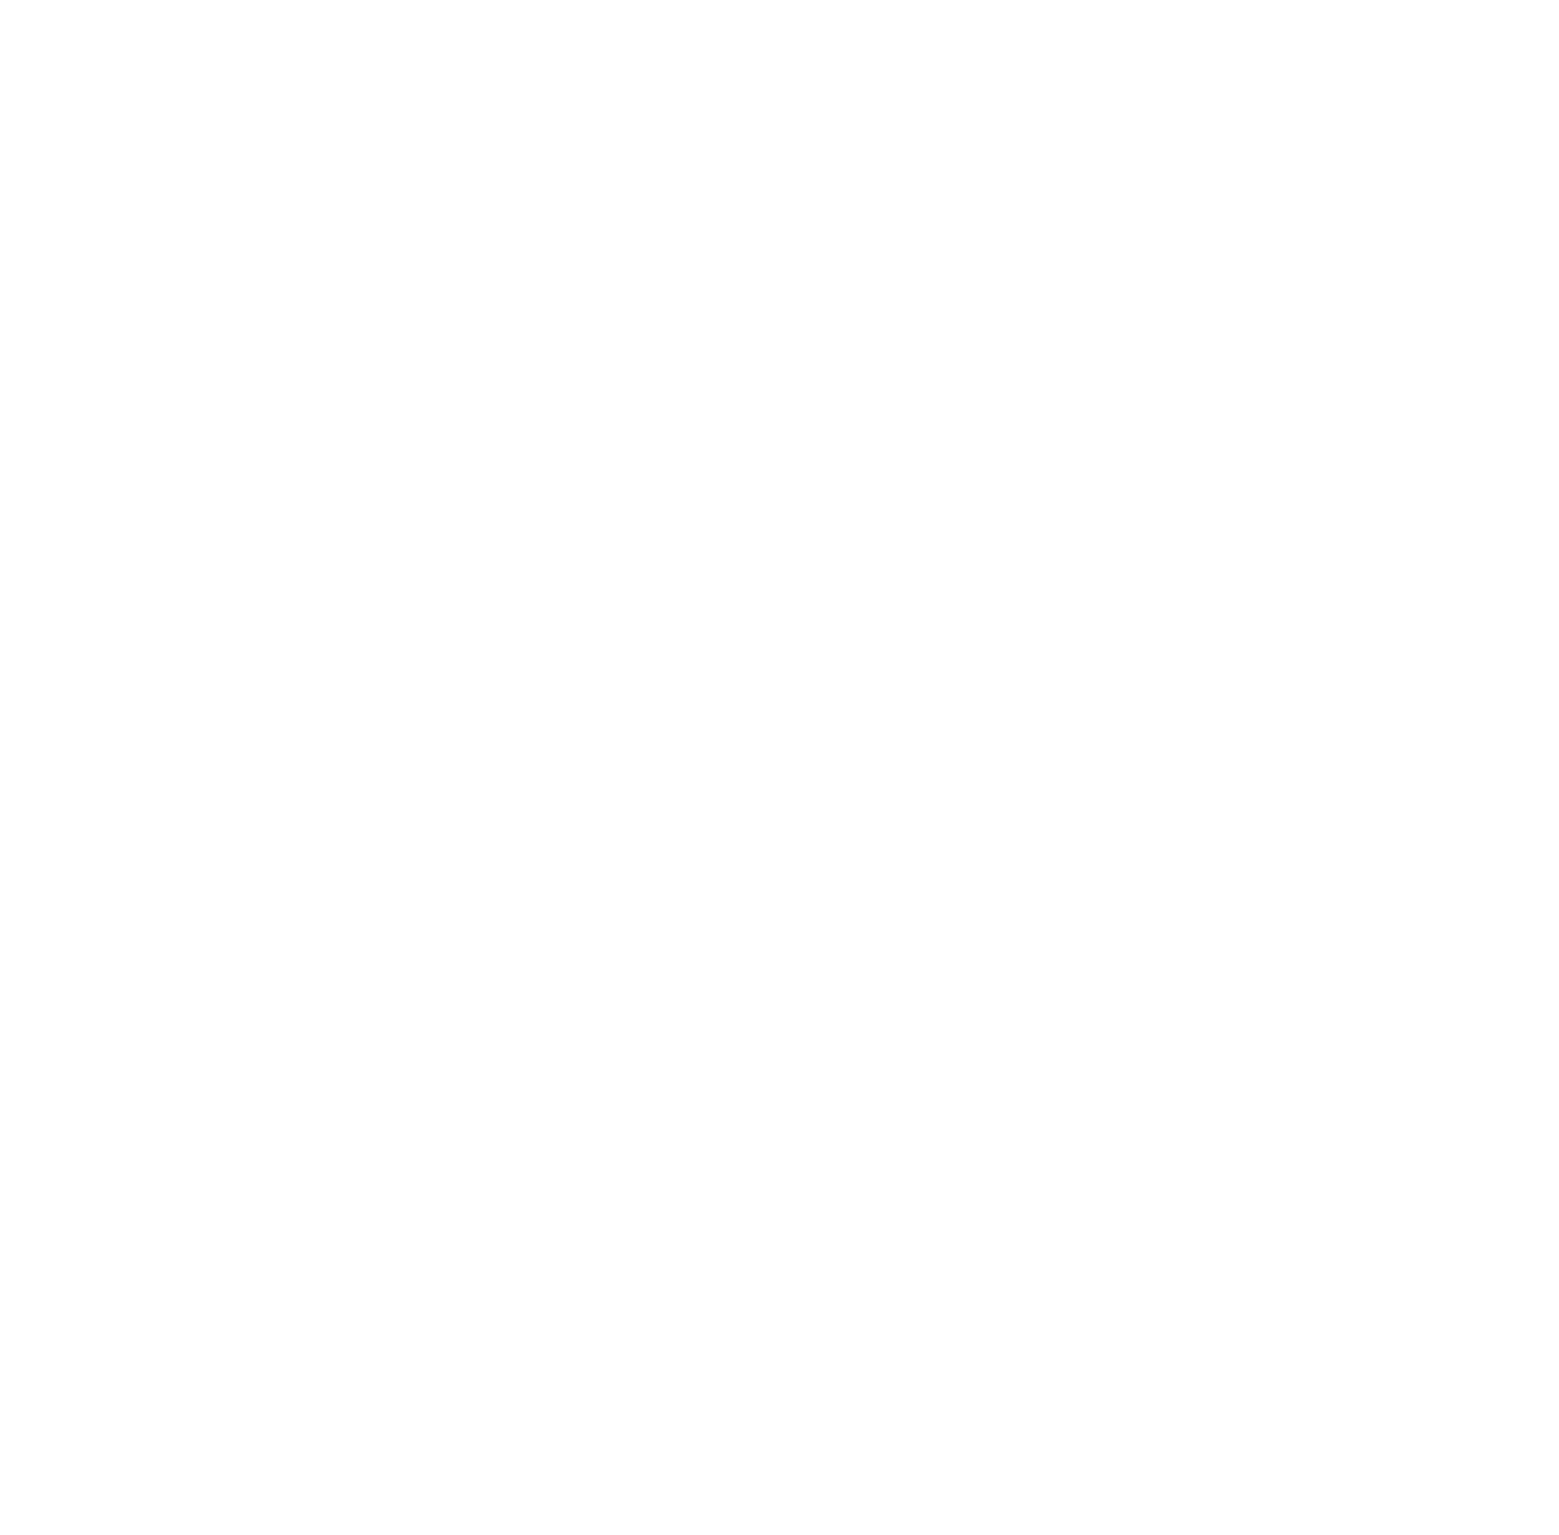 j&j logo